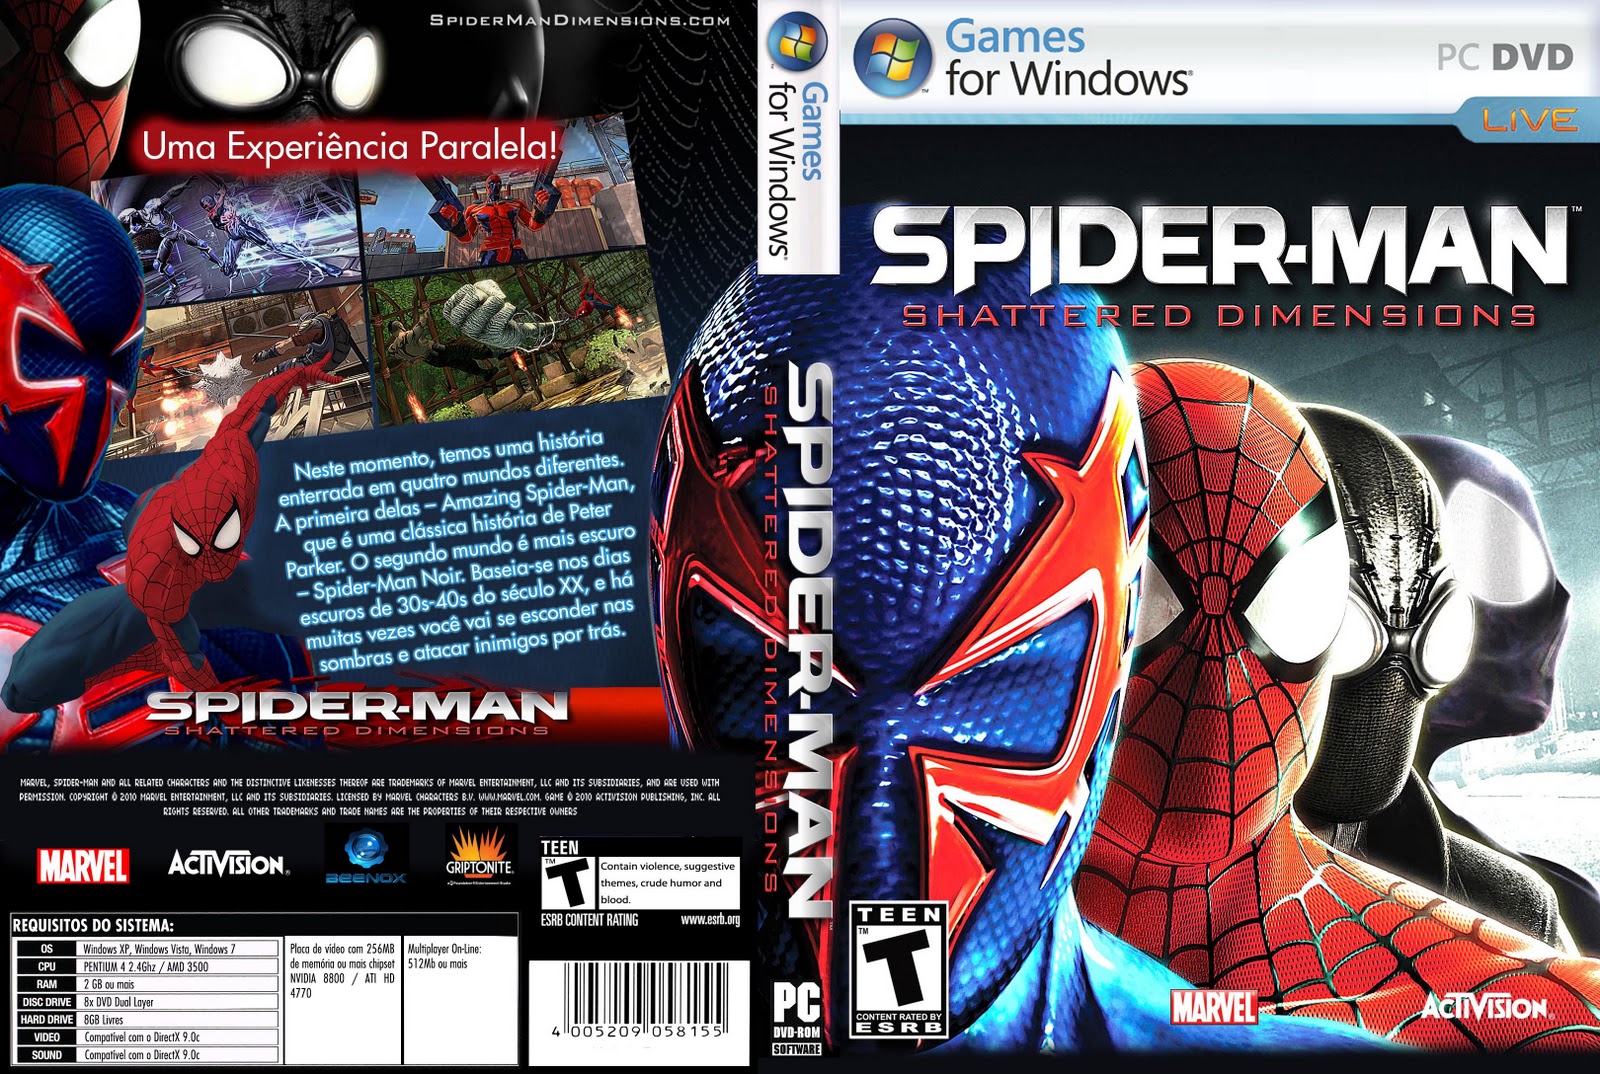 Человек паук игры по порядку все части. Spider-man Shattered Dimensions ps3 обложка. Spider man Shattered Dimensions ПК диск. Spider man Shattered Dimensions диск. Spider man 2 обложка игры диска.